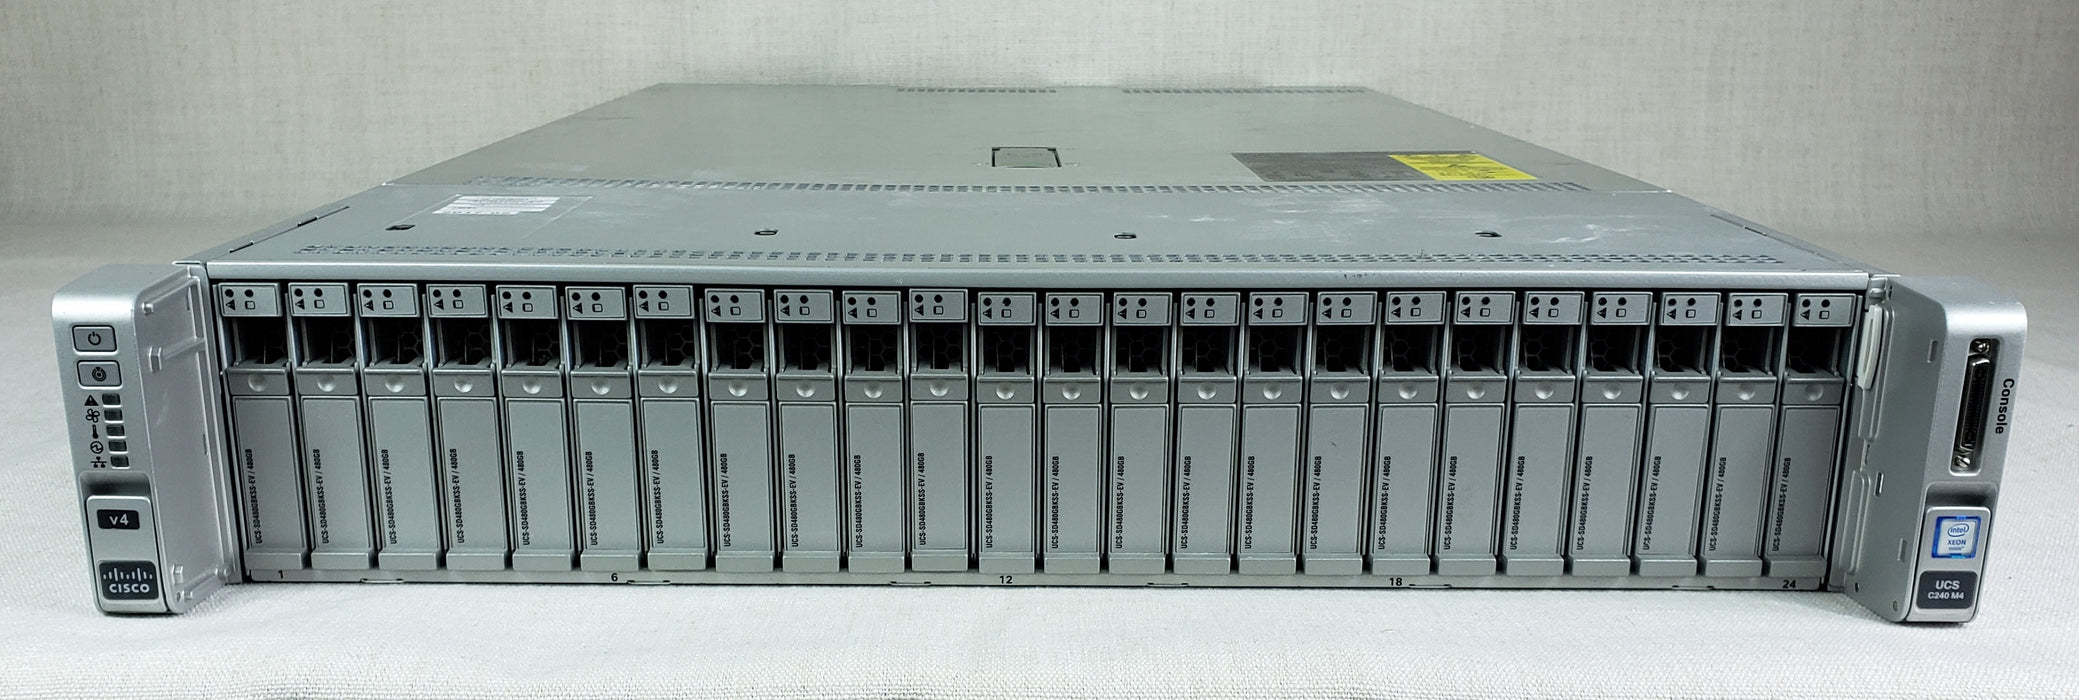 Cisco UCSC-C240-M4SX 2U 24 Bay Server 2x 8C E5-2620v4 2.1GHz 256GB RAM MRAID12G